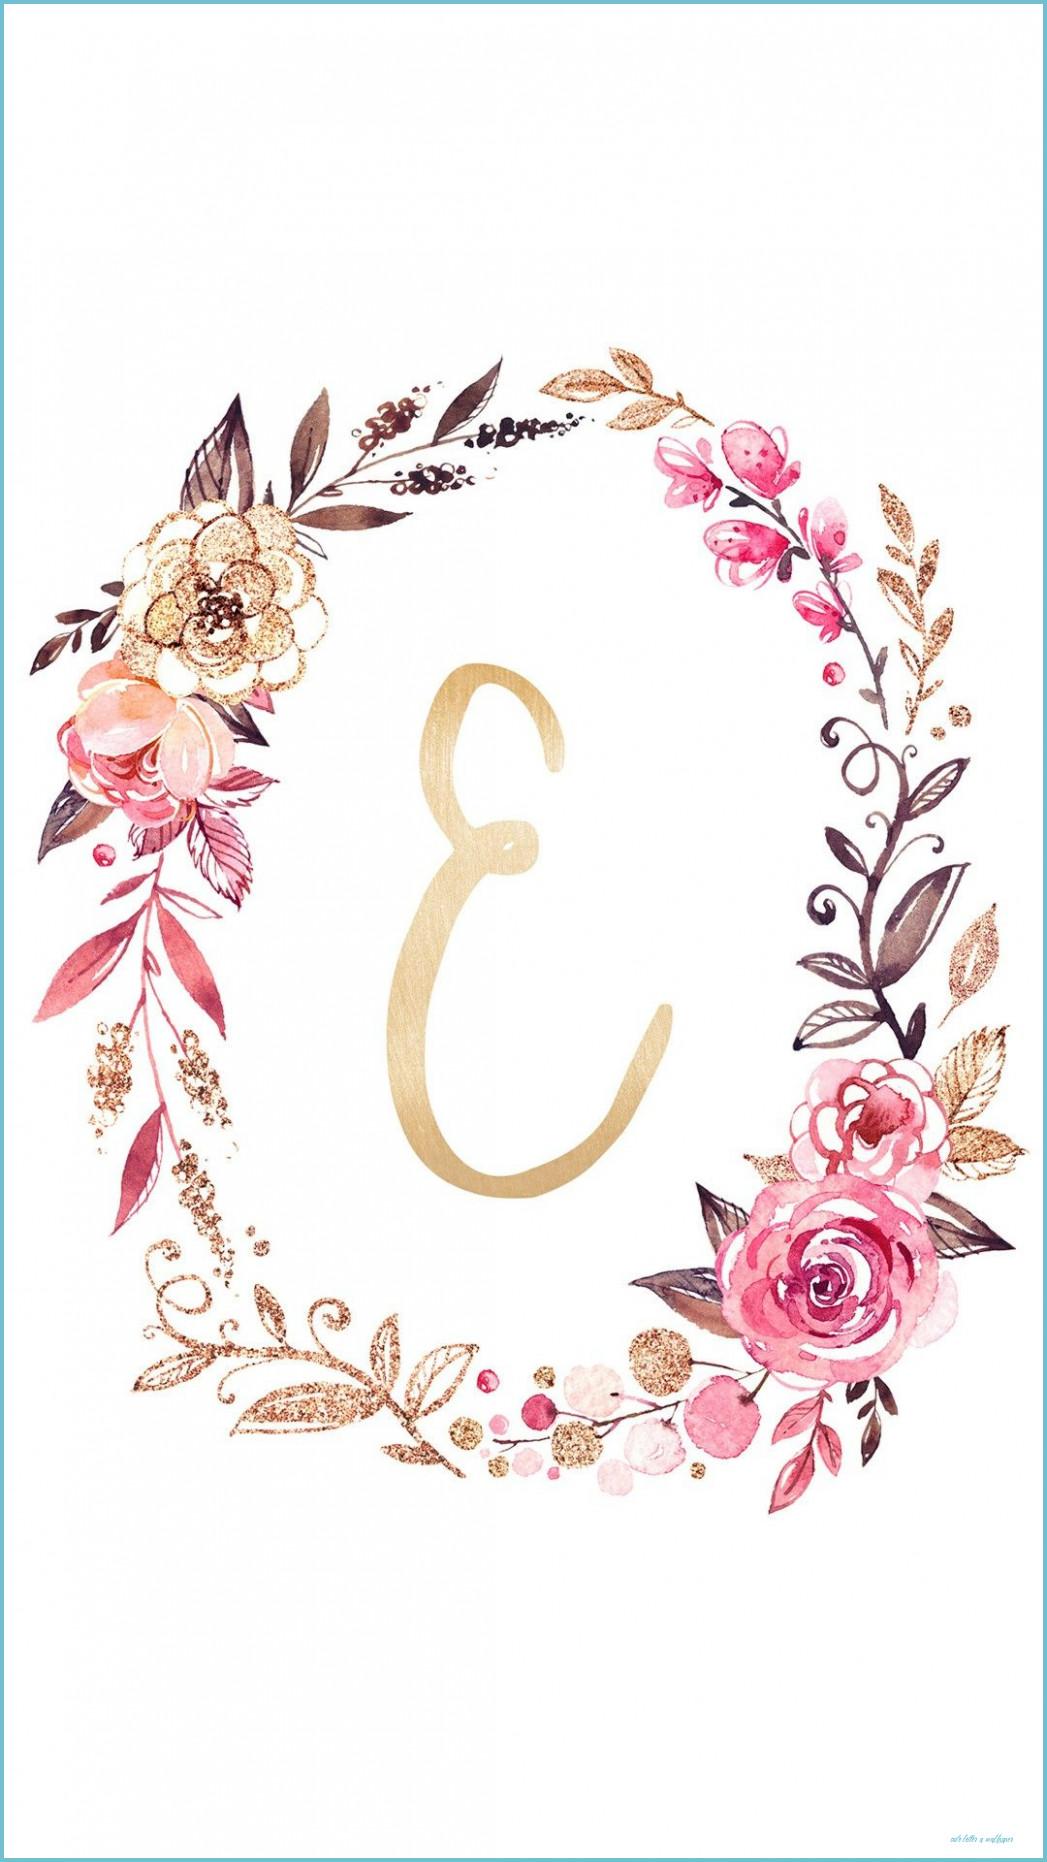 Với Letter E Backgrounds, bạn có thể phát triển sự sáng tạo của mình. Hình ảnh nền với chữ E được thiết kế tỉ mỉ và tinh tế sẽ giúp bạn tạo ra những bức ảnh độc đáo và ấn tượng. Hãy thử và tìm kiếm những ý tưởng cho riêng bạn.